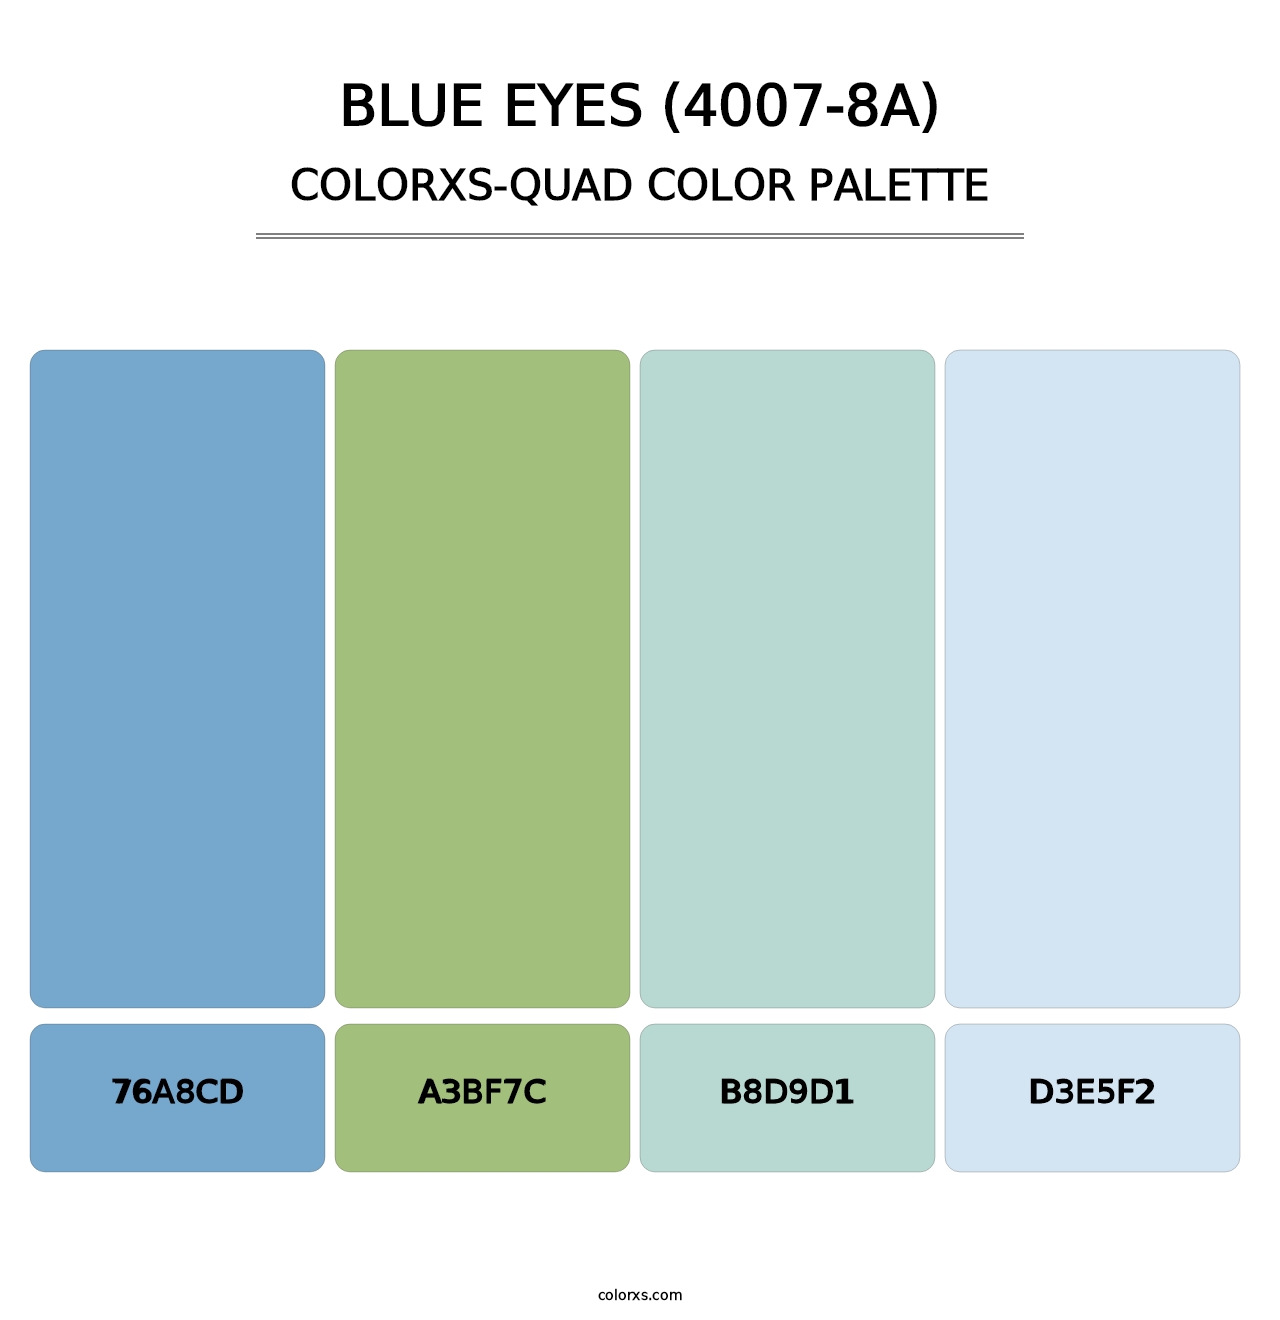 Blue Eyes (4007-8A) - Colorxs Quad Palette